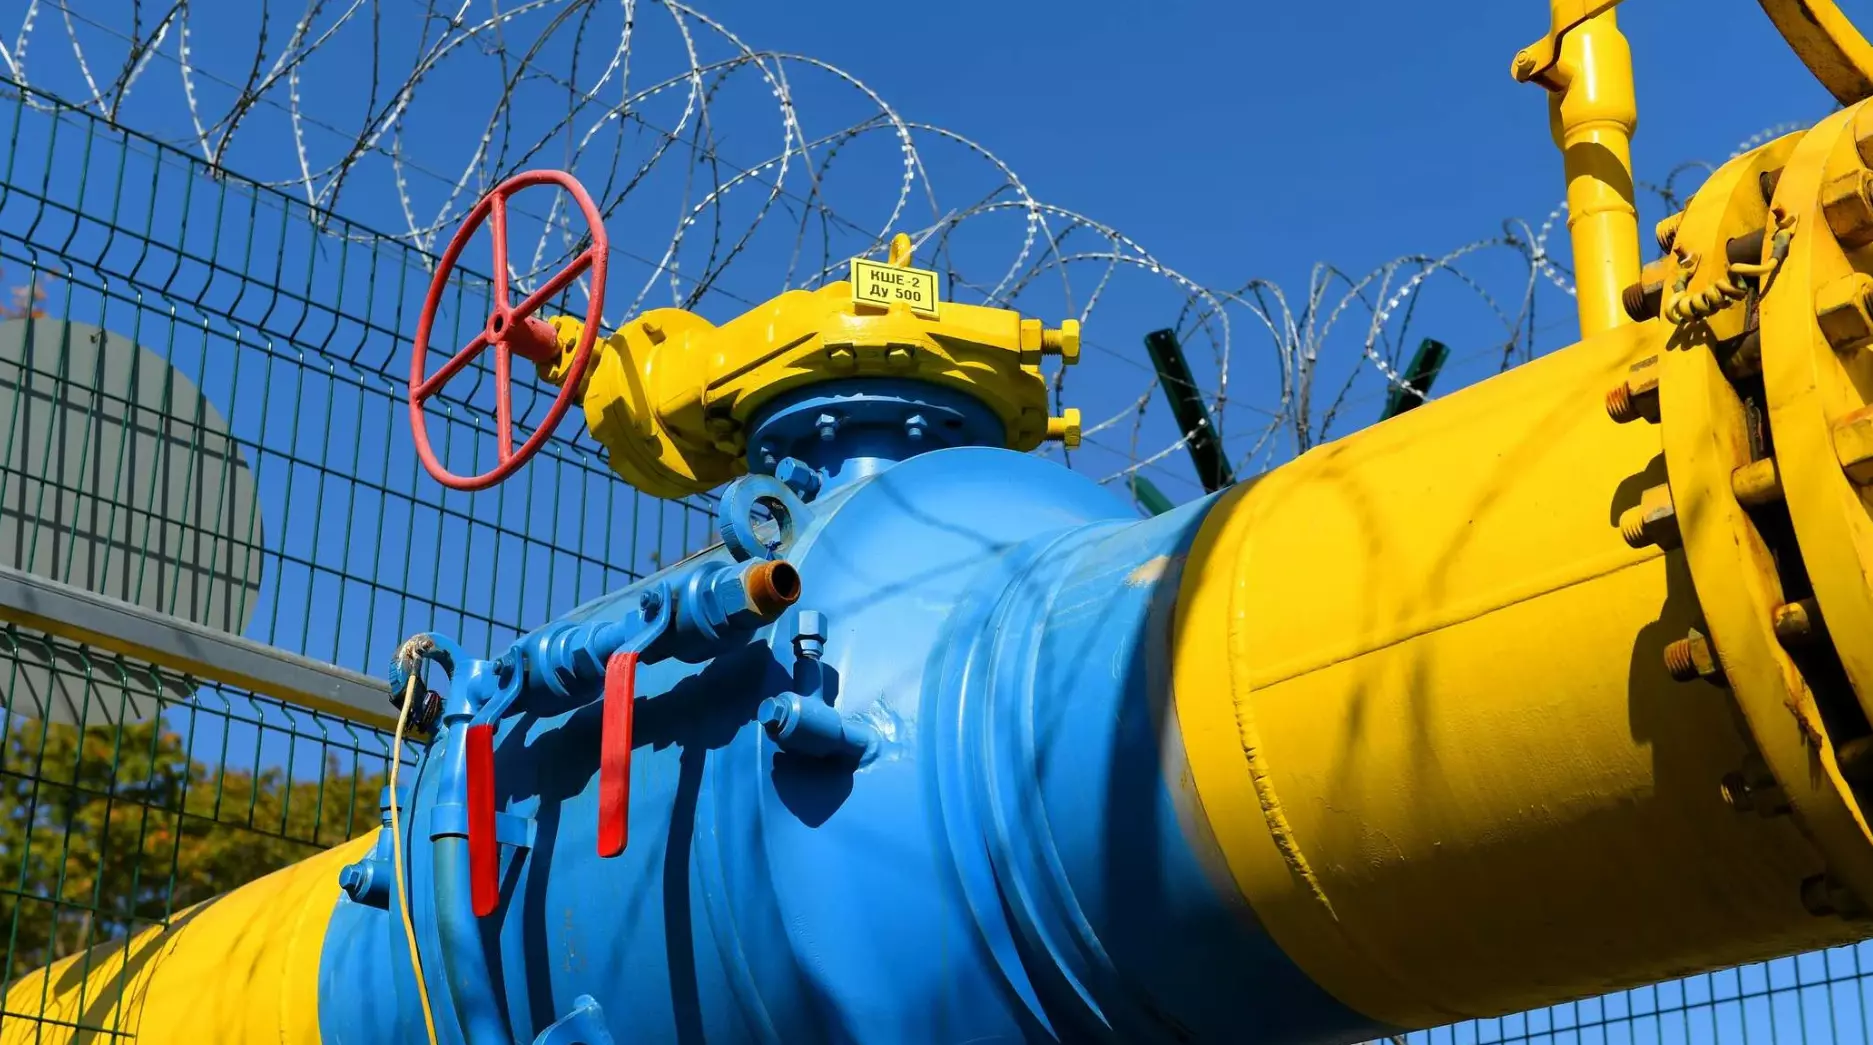 Europa sucht nach Wegen, um die Gaslieferungen zu sichern